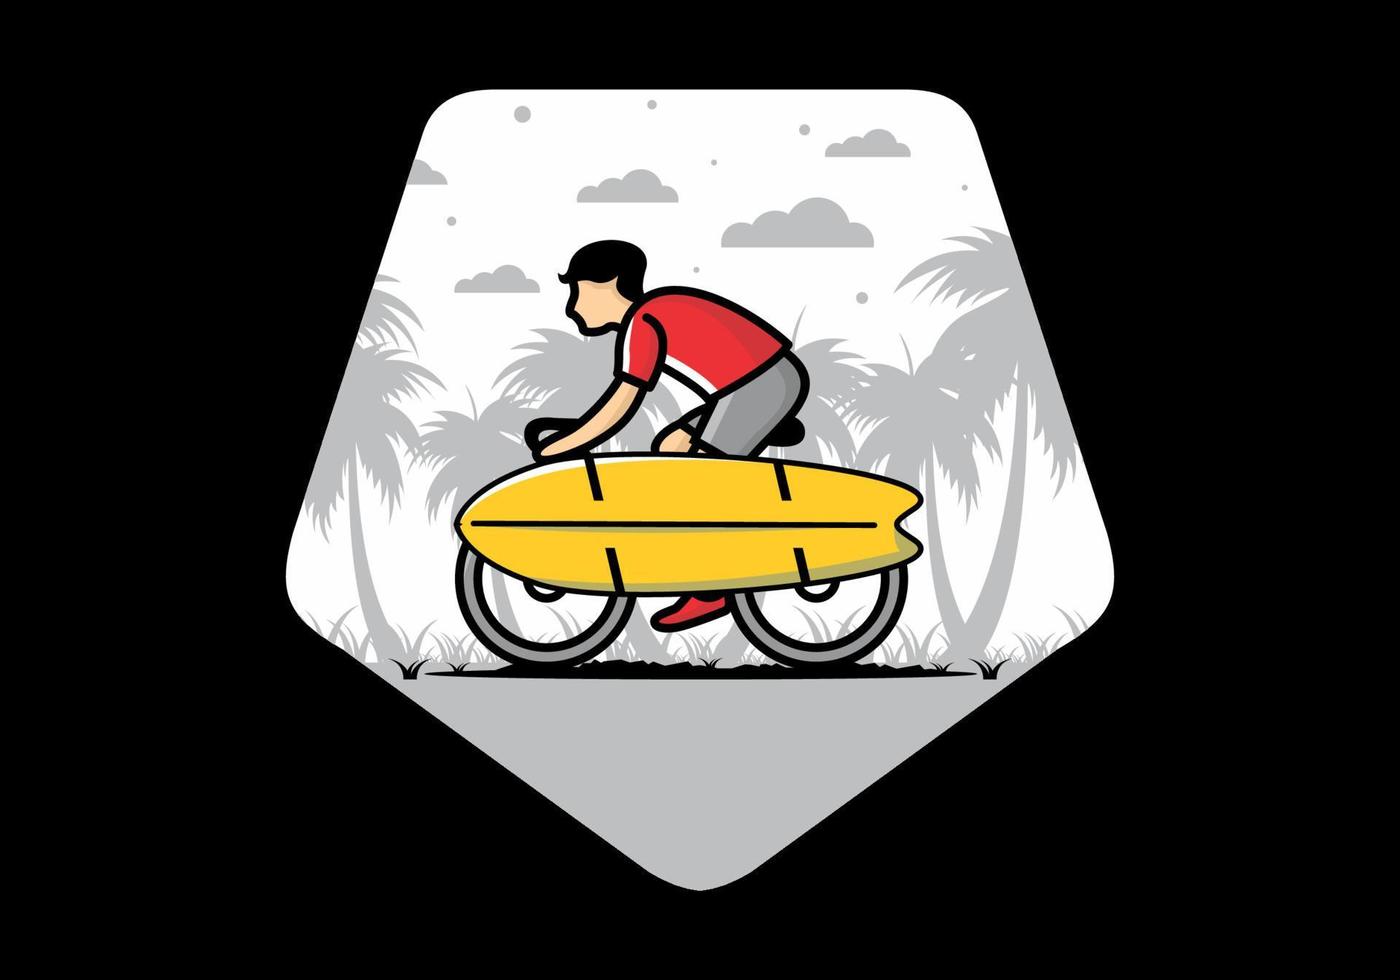 andar de bicicleta com uma ilustração de prancha de surf vetor